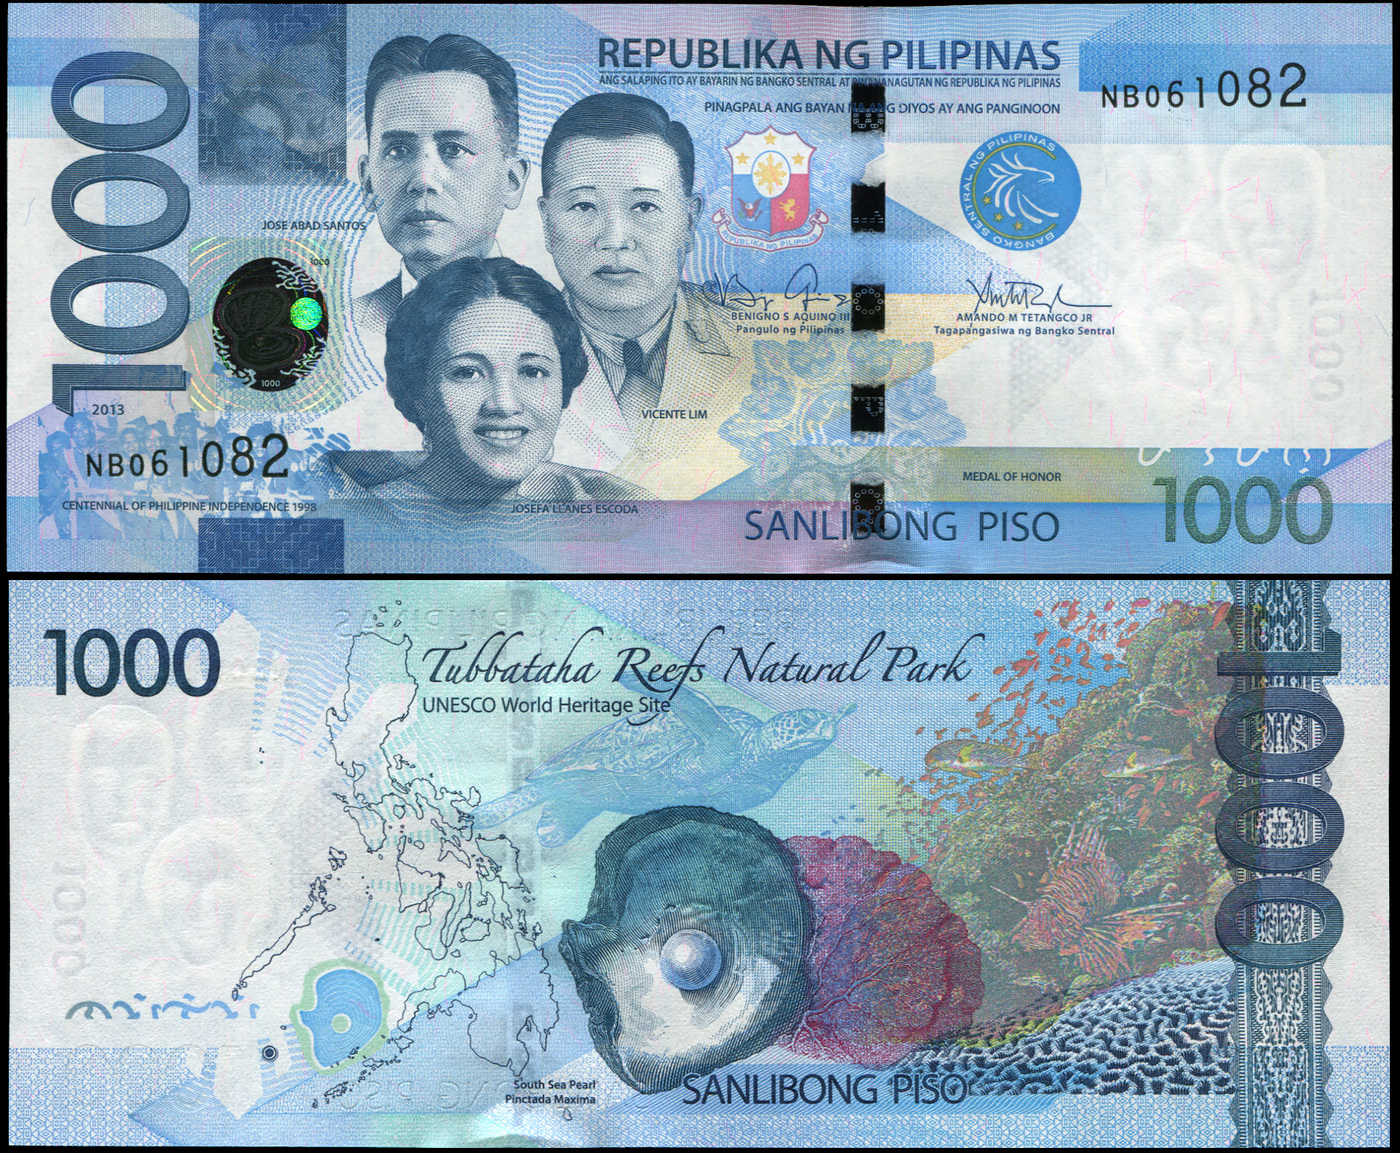 1000 2017 года. Филиппины песо 2010 банкноты. Купюры филиппинских песо. Современные банкноты Филиппин. 1000 Песо Филиппины.